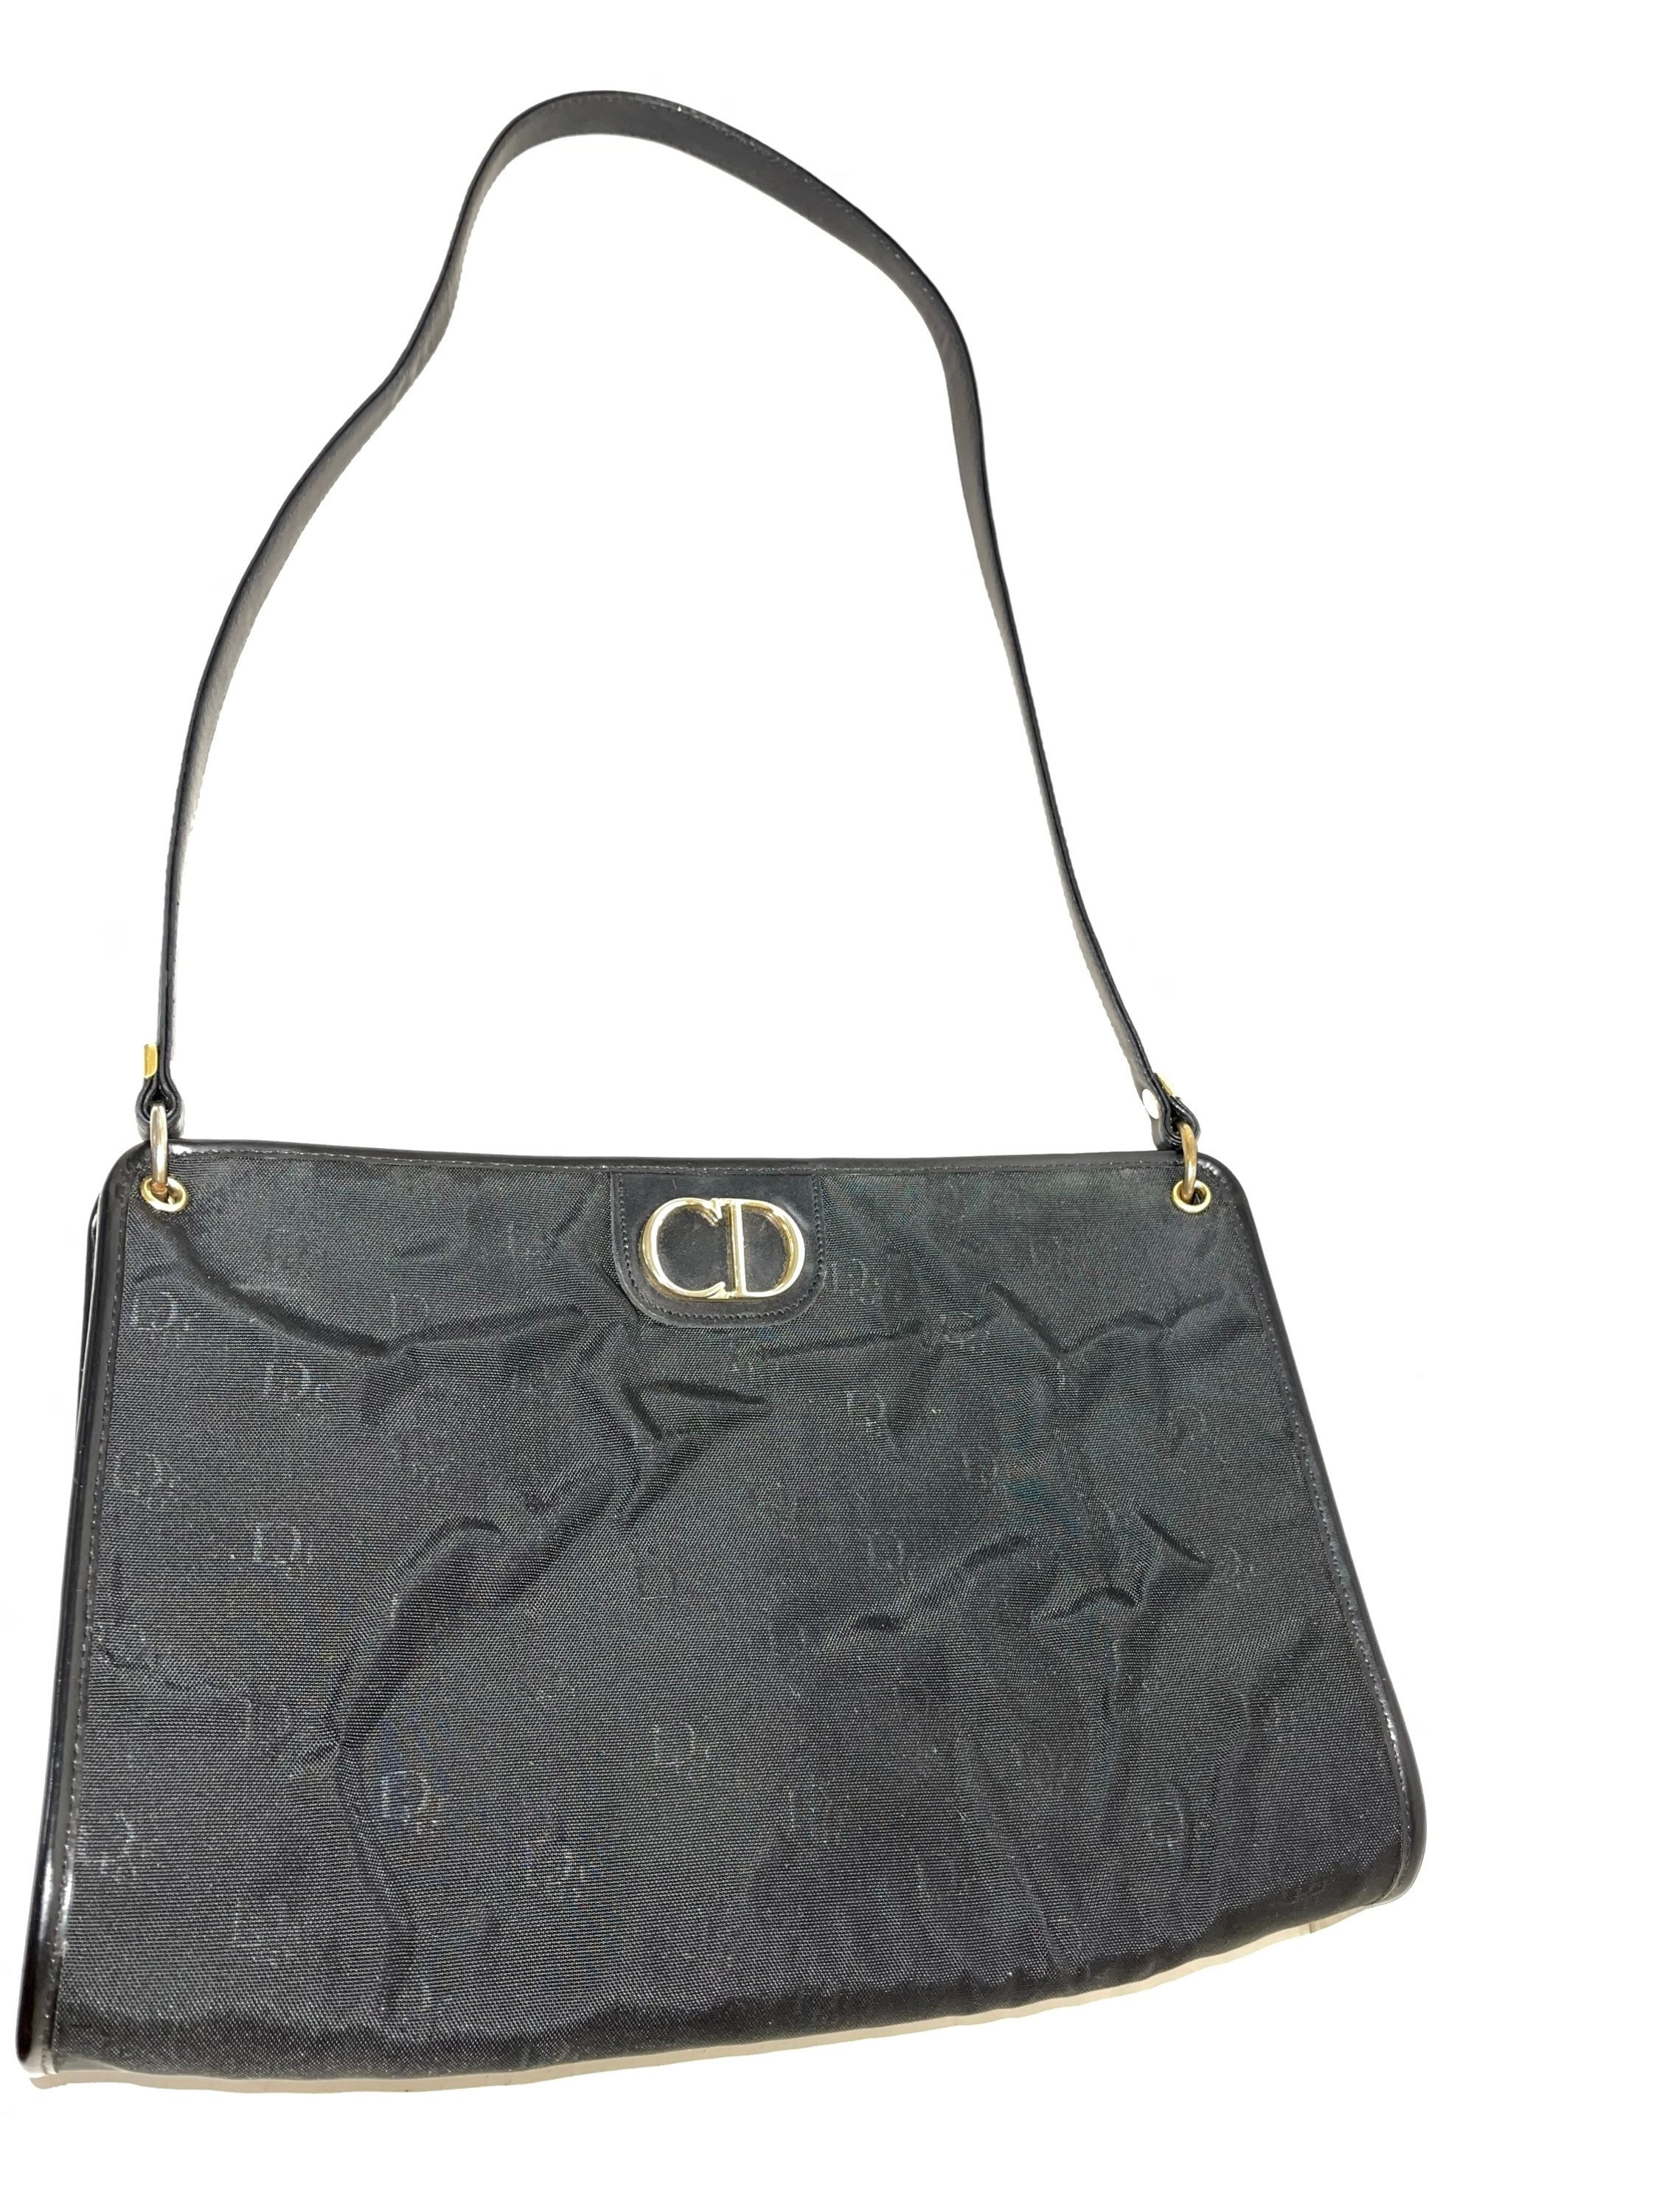 Christian Dior Vintage Black Logo Canvas Leather Large Dr Satchel Bag France